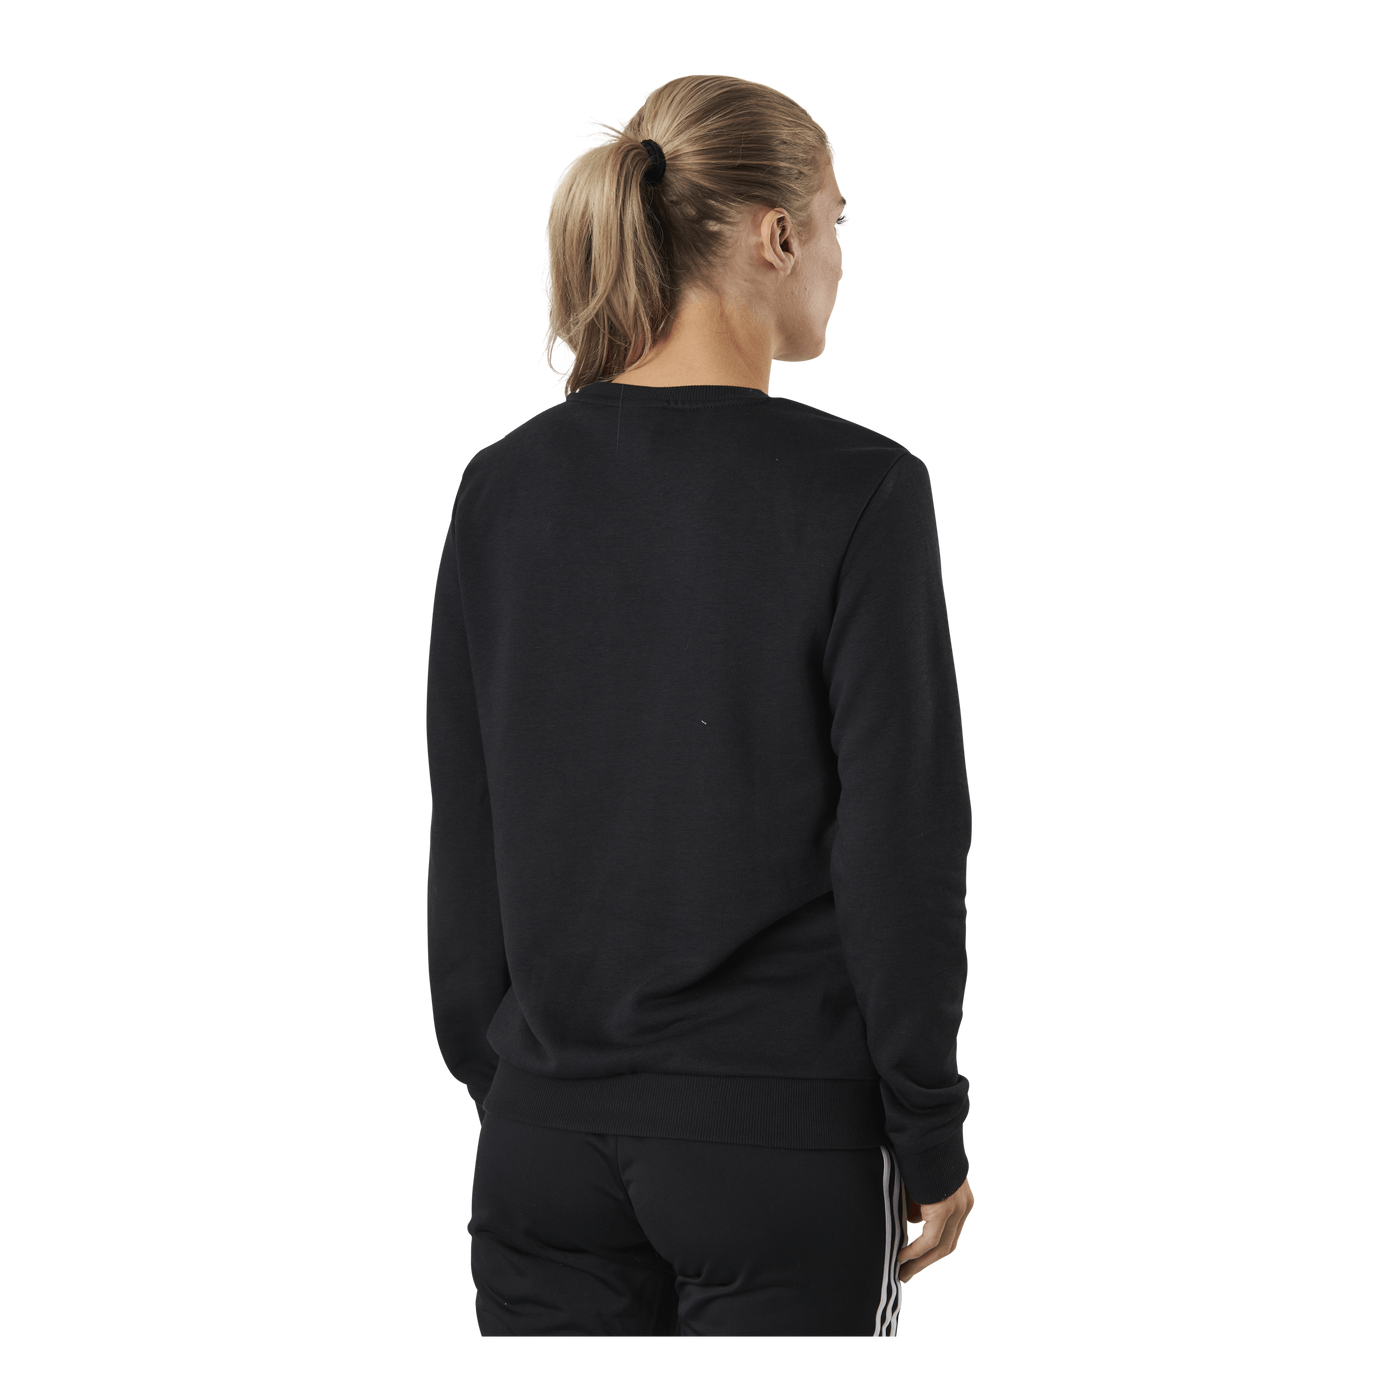 Essentials Sweatshirt Black / White